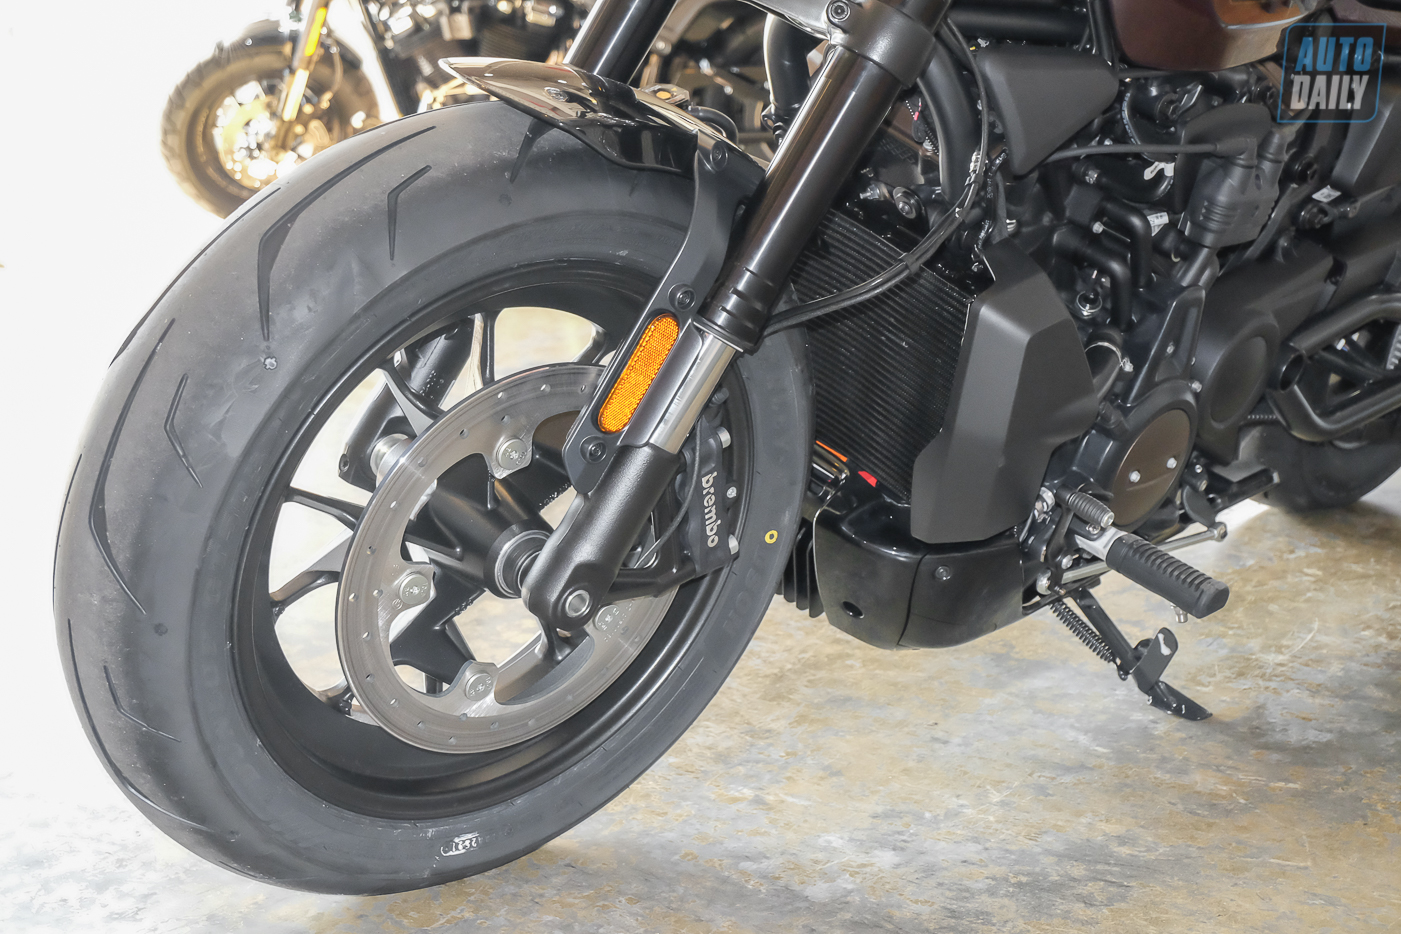 Cận cảnh Harley-Davidson Sportster S giá từ 589 triệu đồng tại Việt Nam Harley-Davidson Sportster S (16).jpg